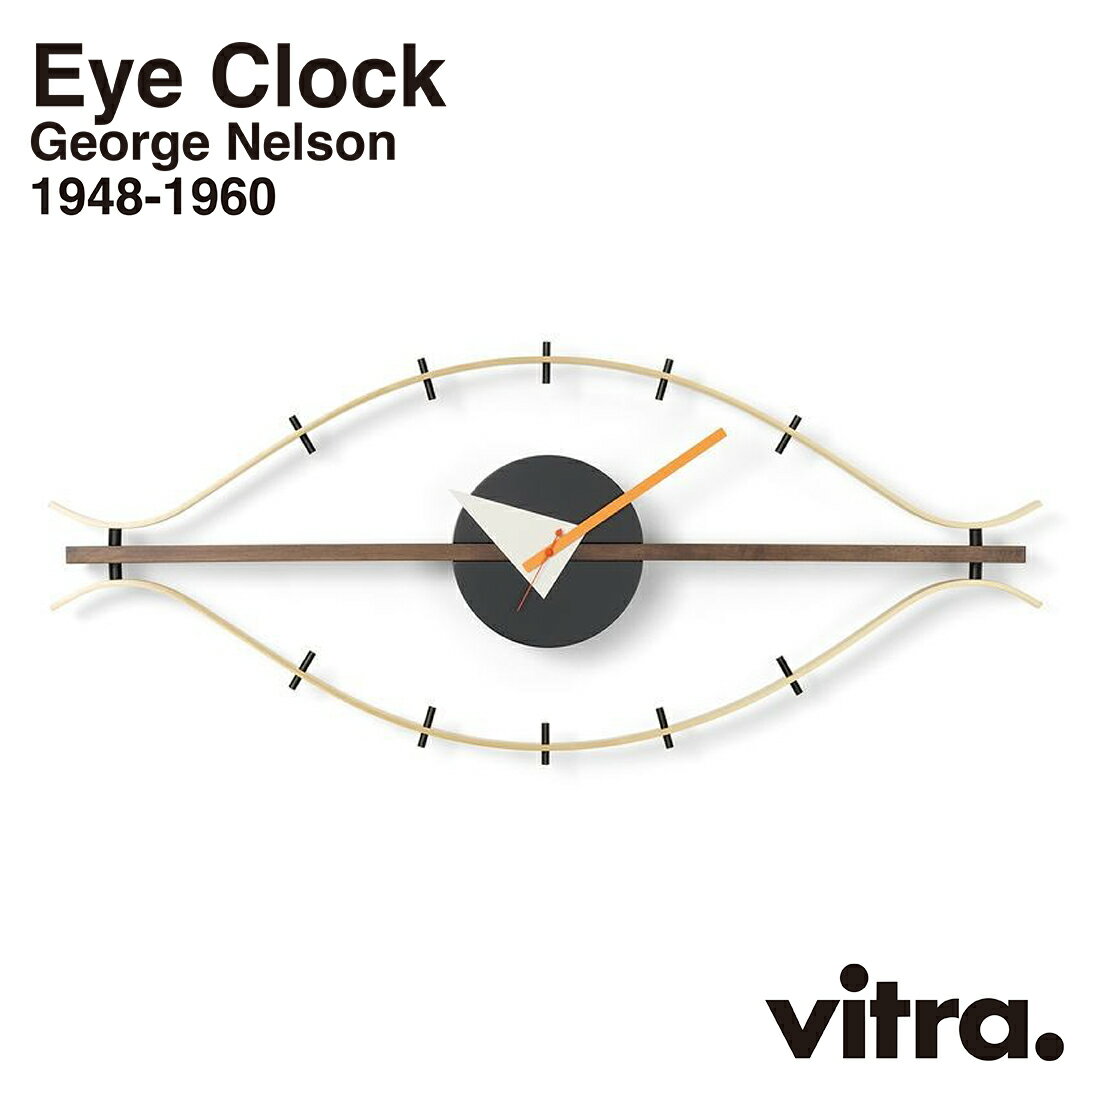 アイクロック vitra ヴィトラ Eye Clock アイクロック Wall Clocks ウォールクロック GeorgeNelson ジョージ・ネルソン 時計 掛時計 インテリア 北欧 スイス